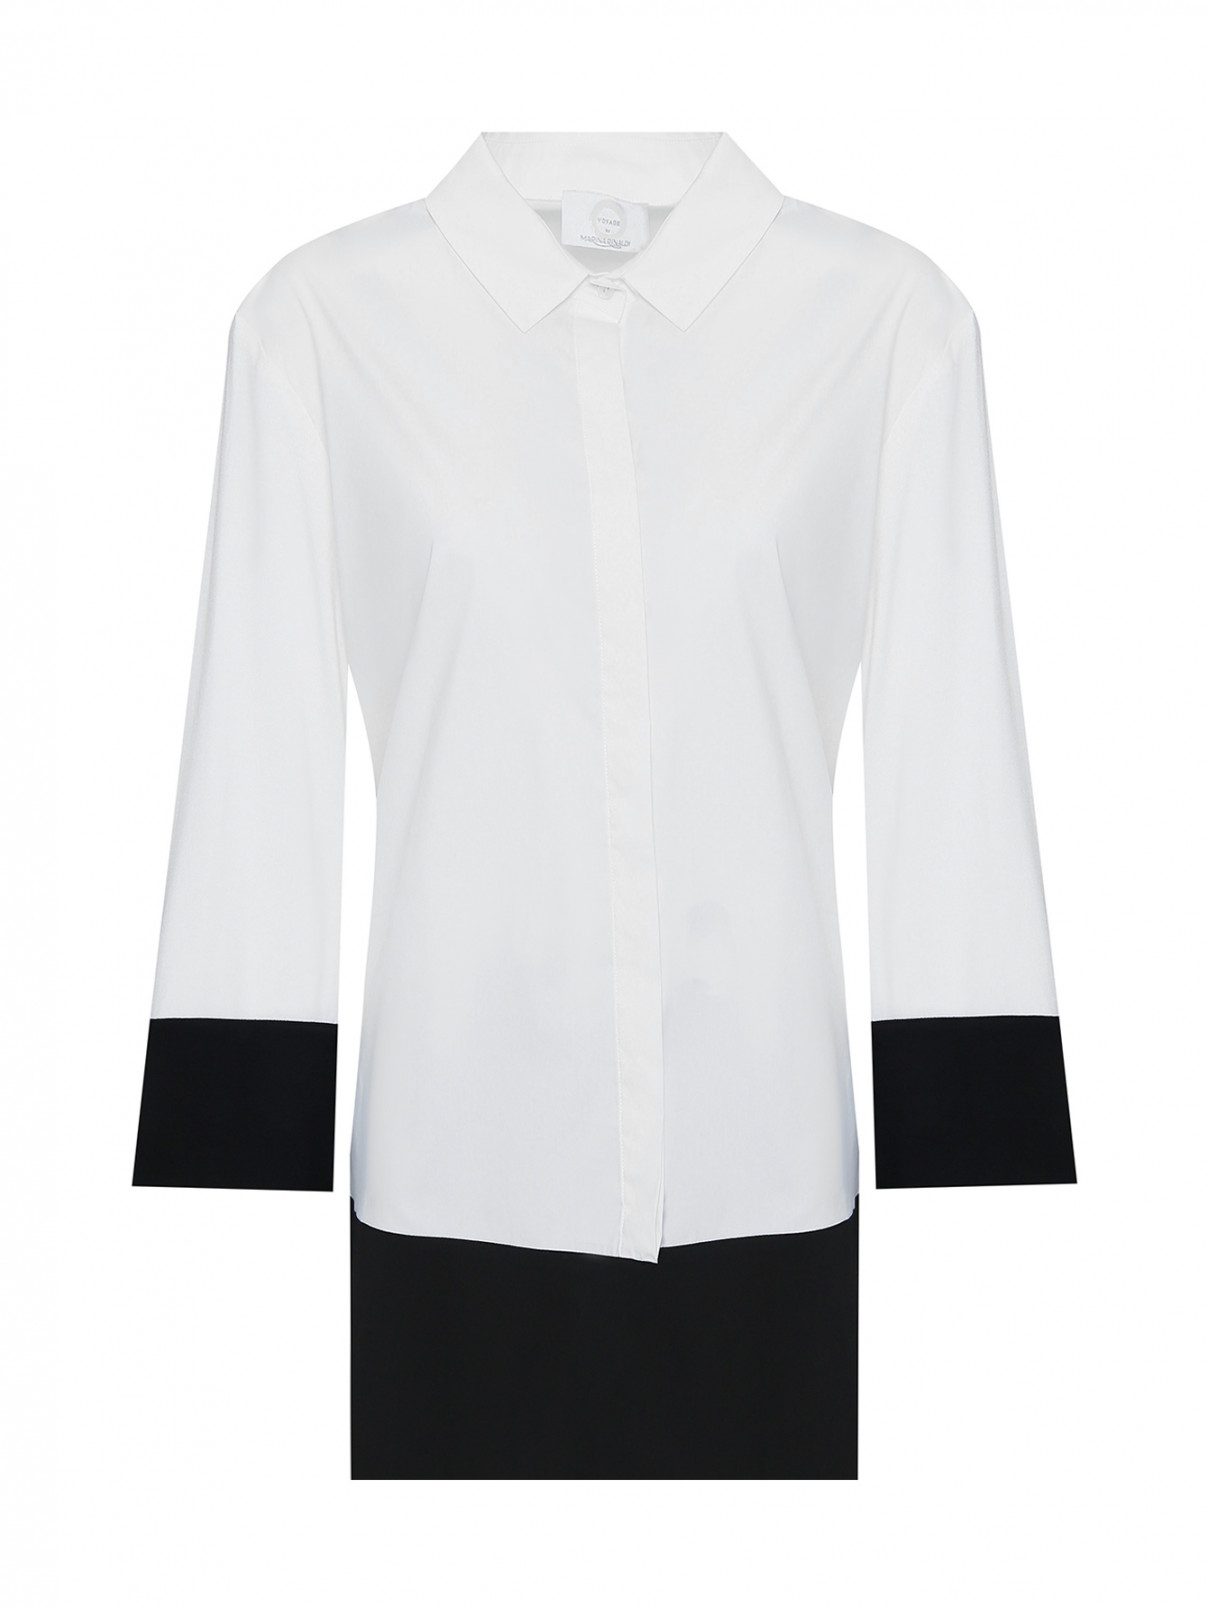 Рубашка из хлопка с контрастным низом Voyage by Marina Rinaldi  –  Общий вид  – Цвет:  Белый